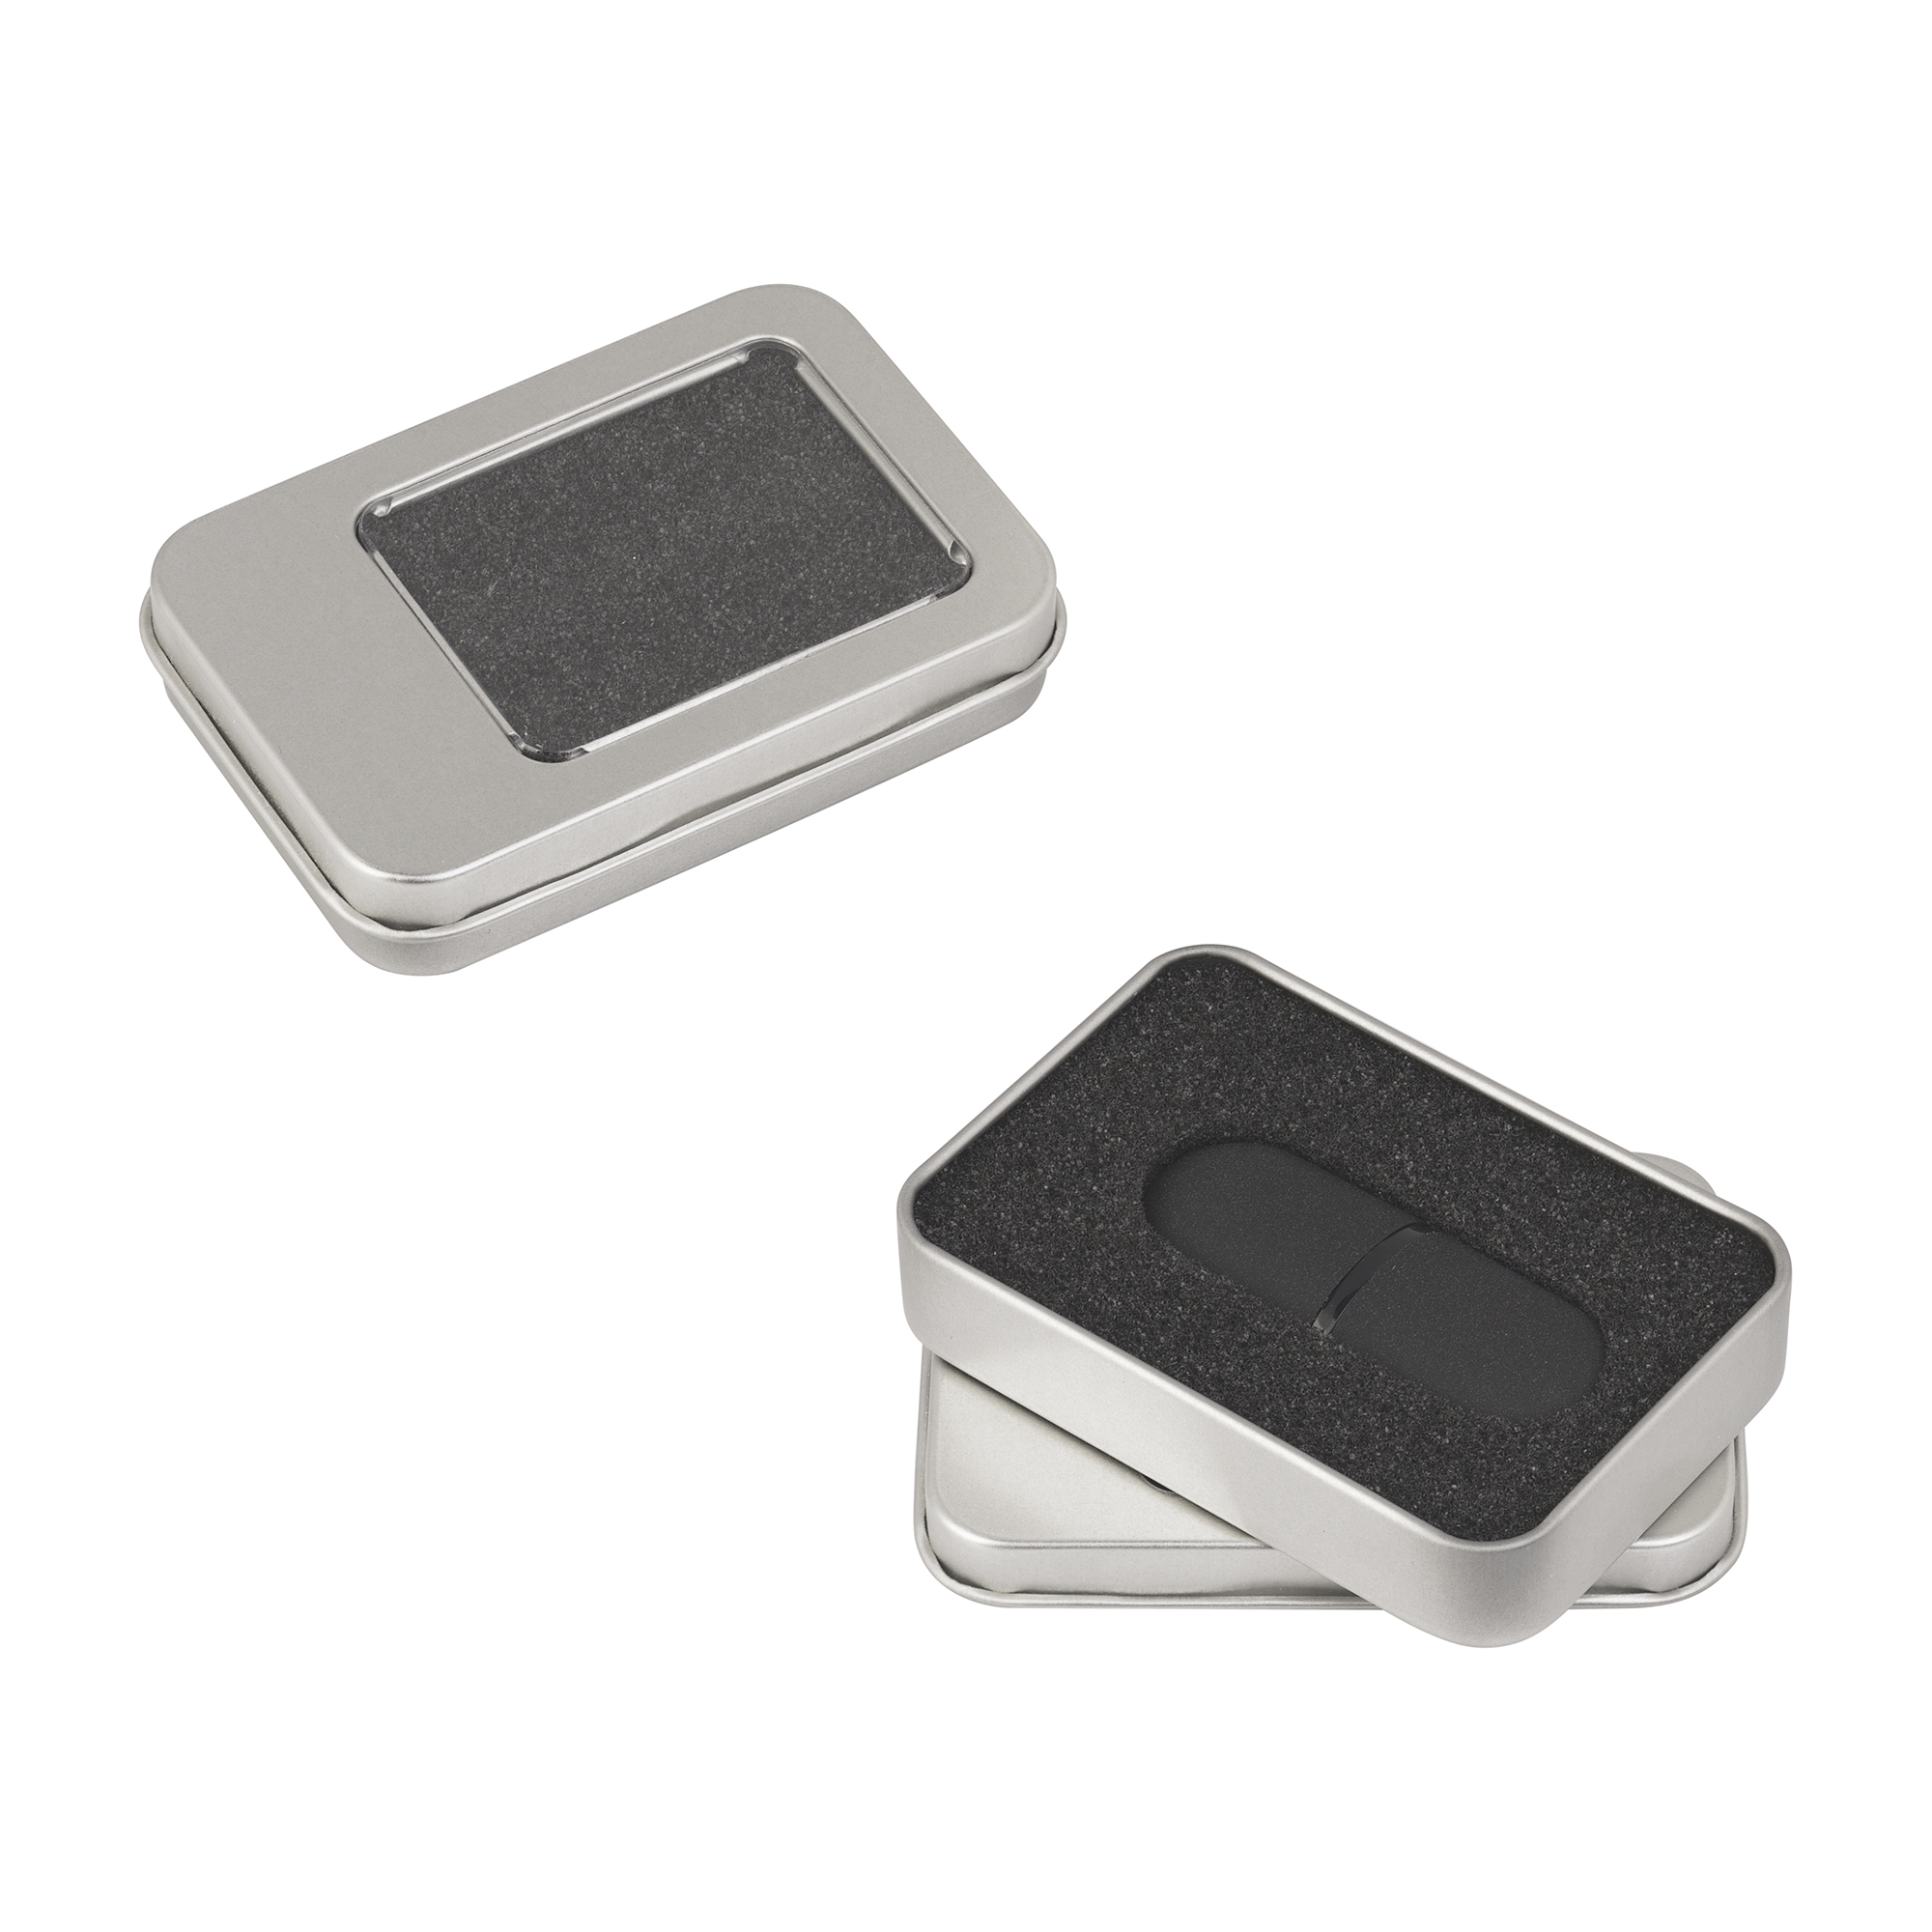 Флеш-карта "Камень" в футляре, объем памяти 32GB, покрытие soft grip , черный, пластик/soft grip